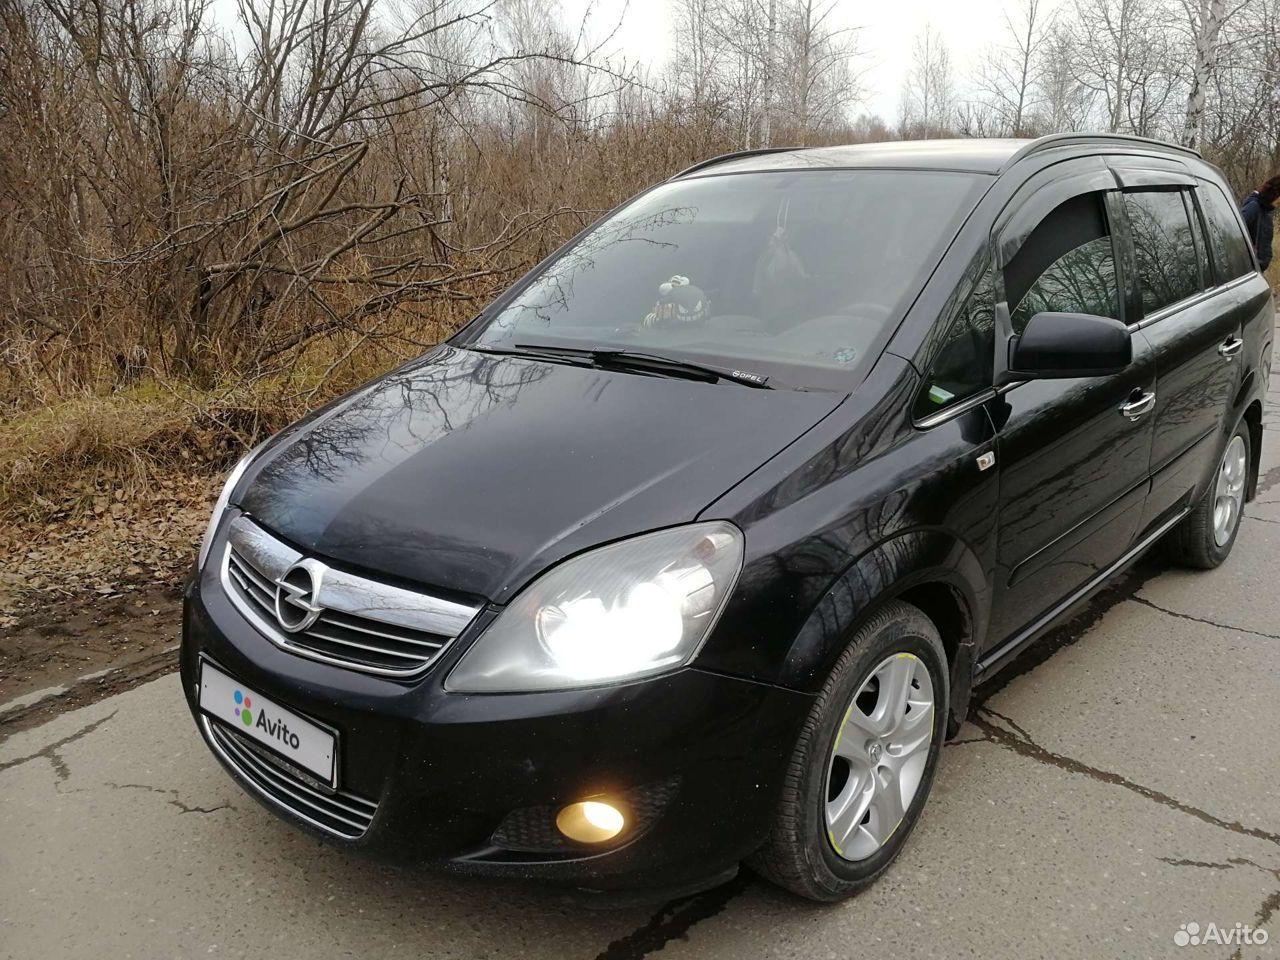 Купить опель зафира 2011. Opel Zafira 2011. Опель Зафира 2011 года. Опель Зафира б 2011 год. Opel Zafira 2011 b3 48f.